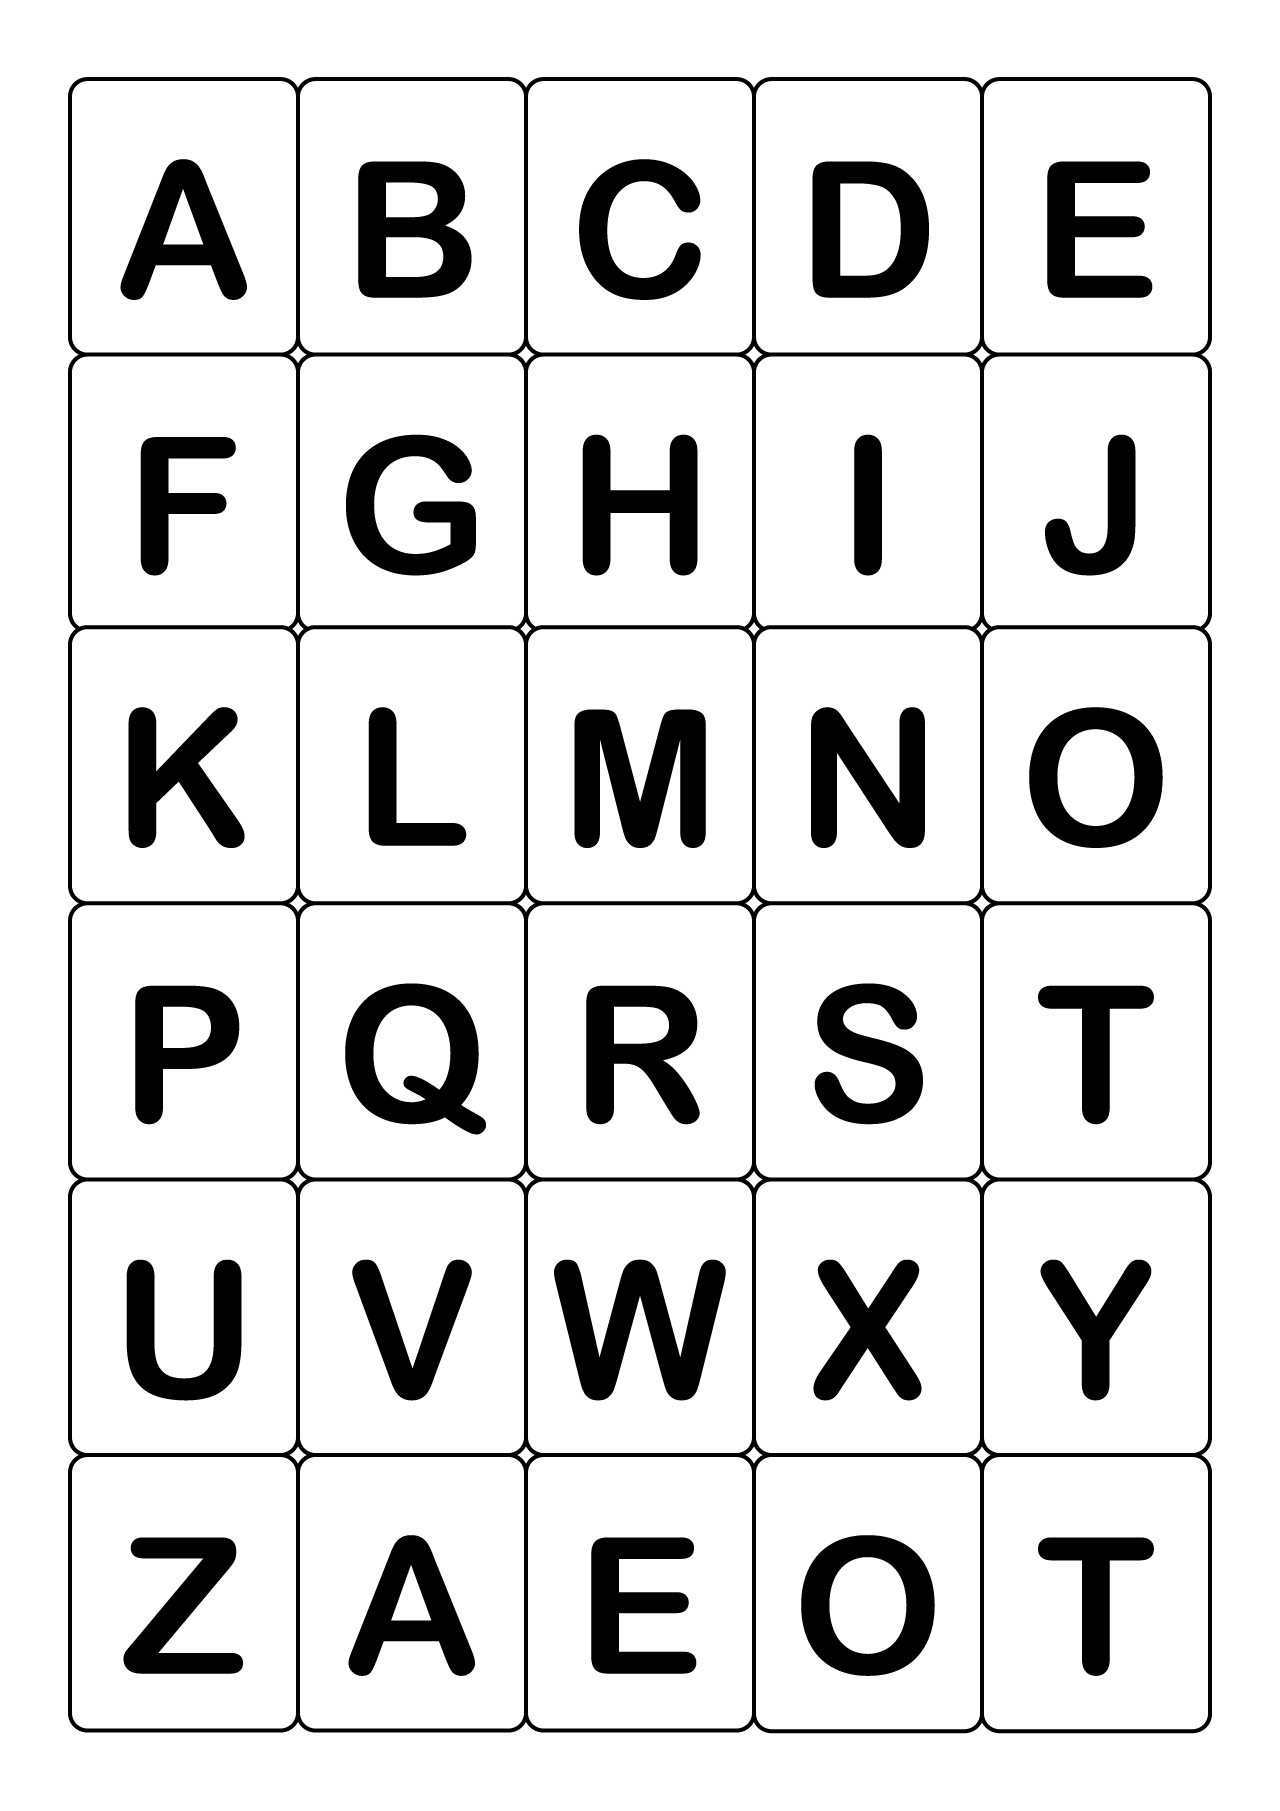 無料の「ABC」英語アルファベットカード（大文字）イラストフリー素材